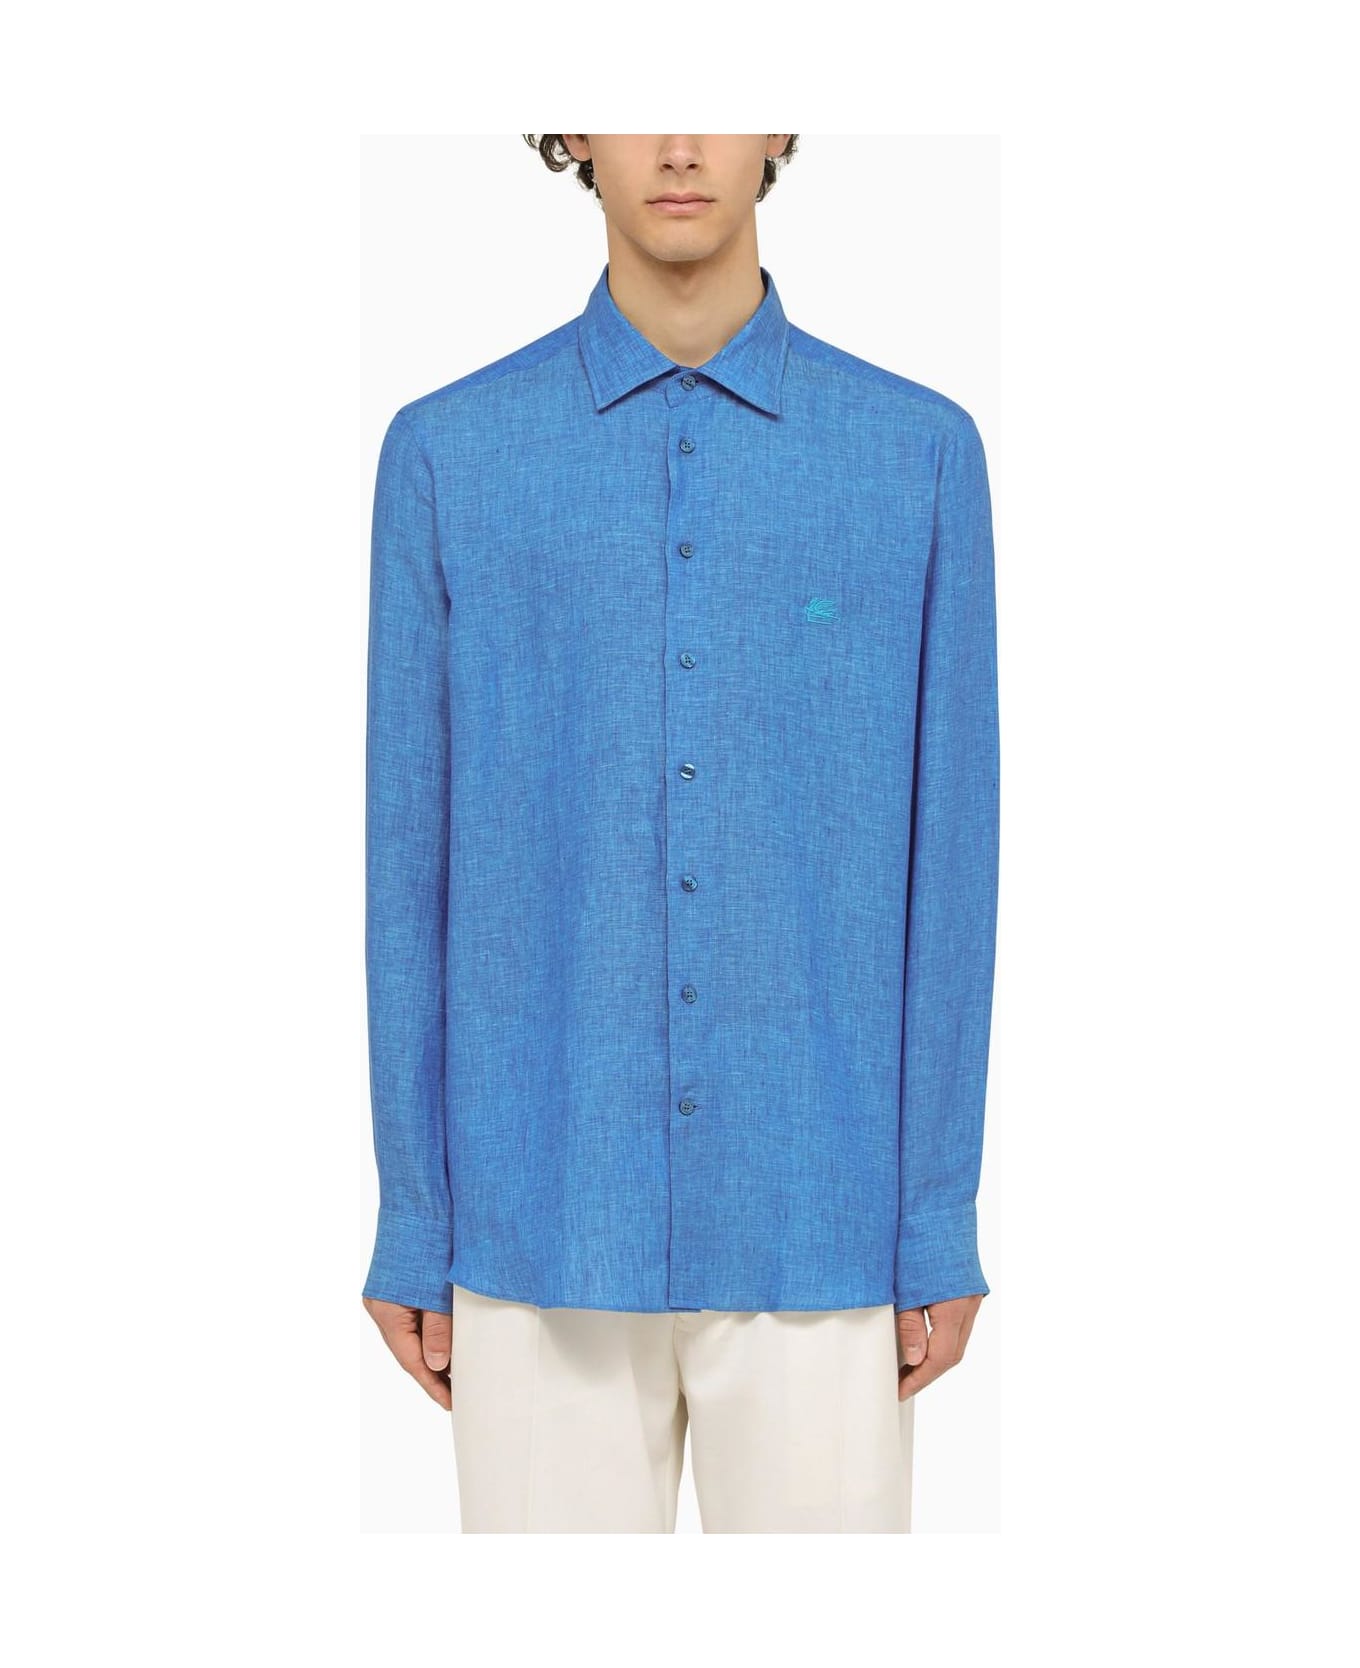 Etro Light Blue Linen Shirt - Blue